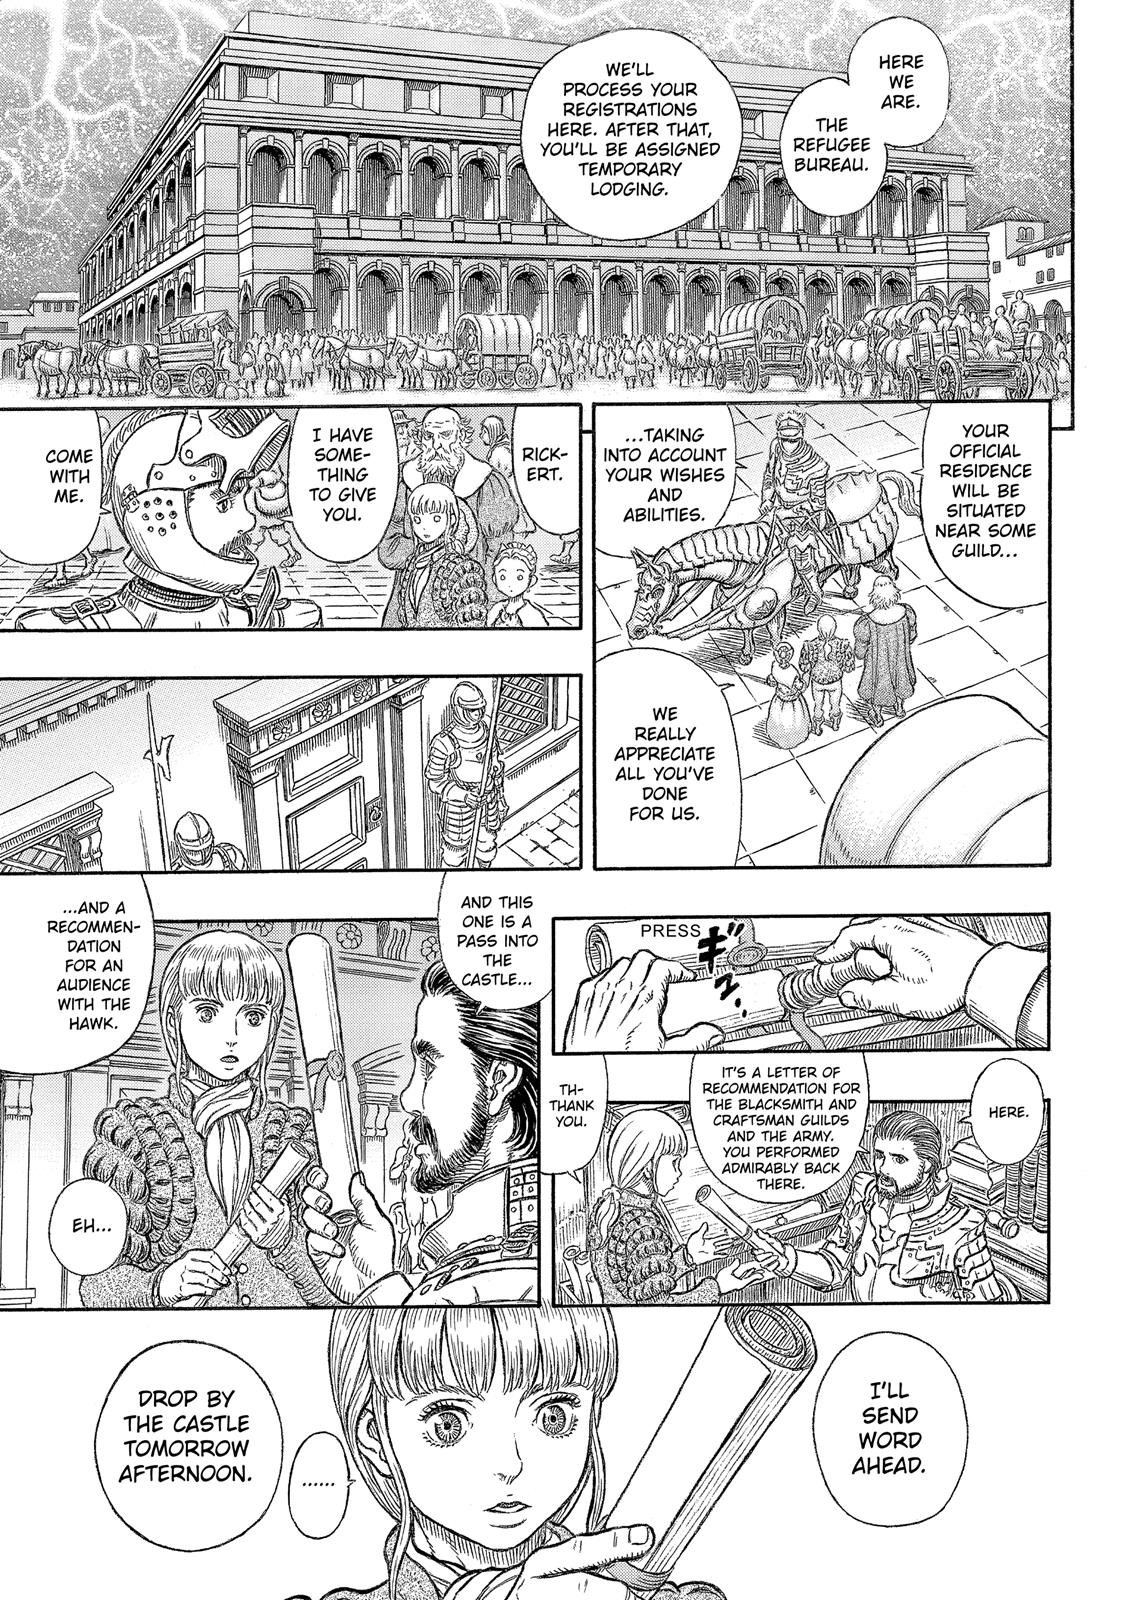 Berserk Manga Chapter 334 image 18